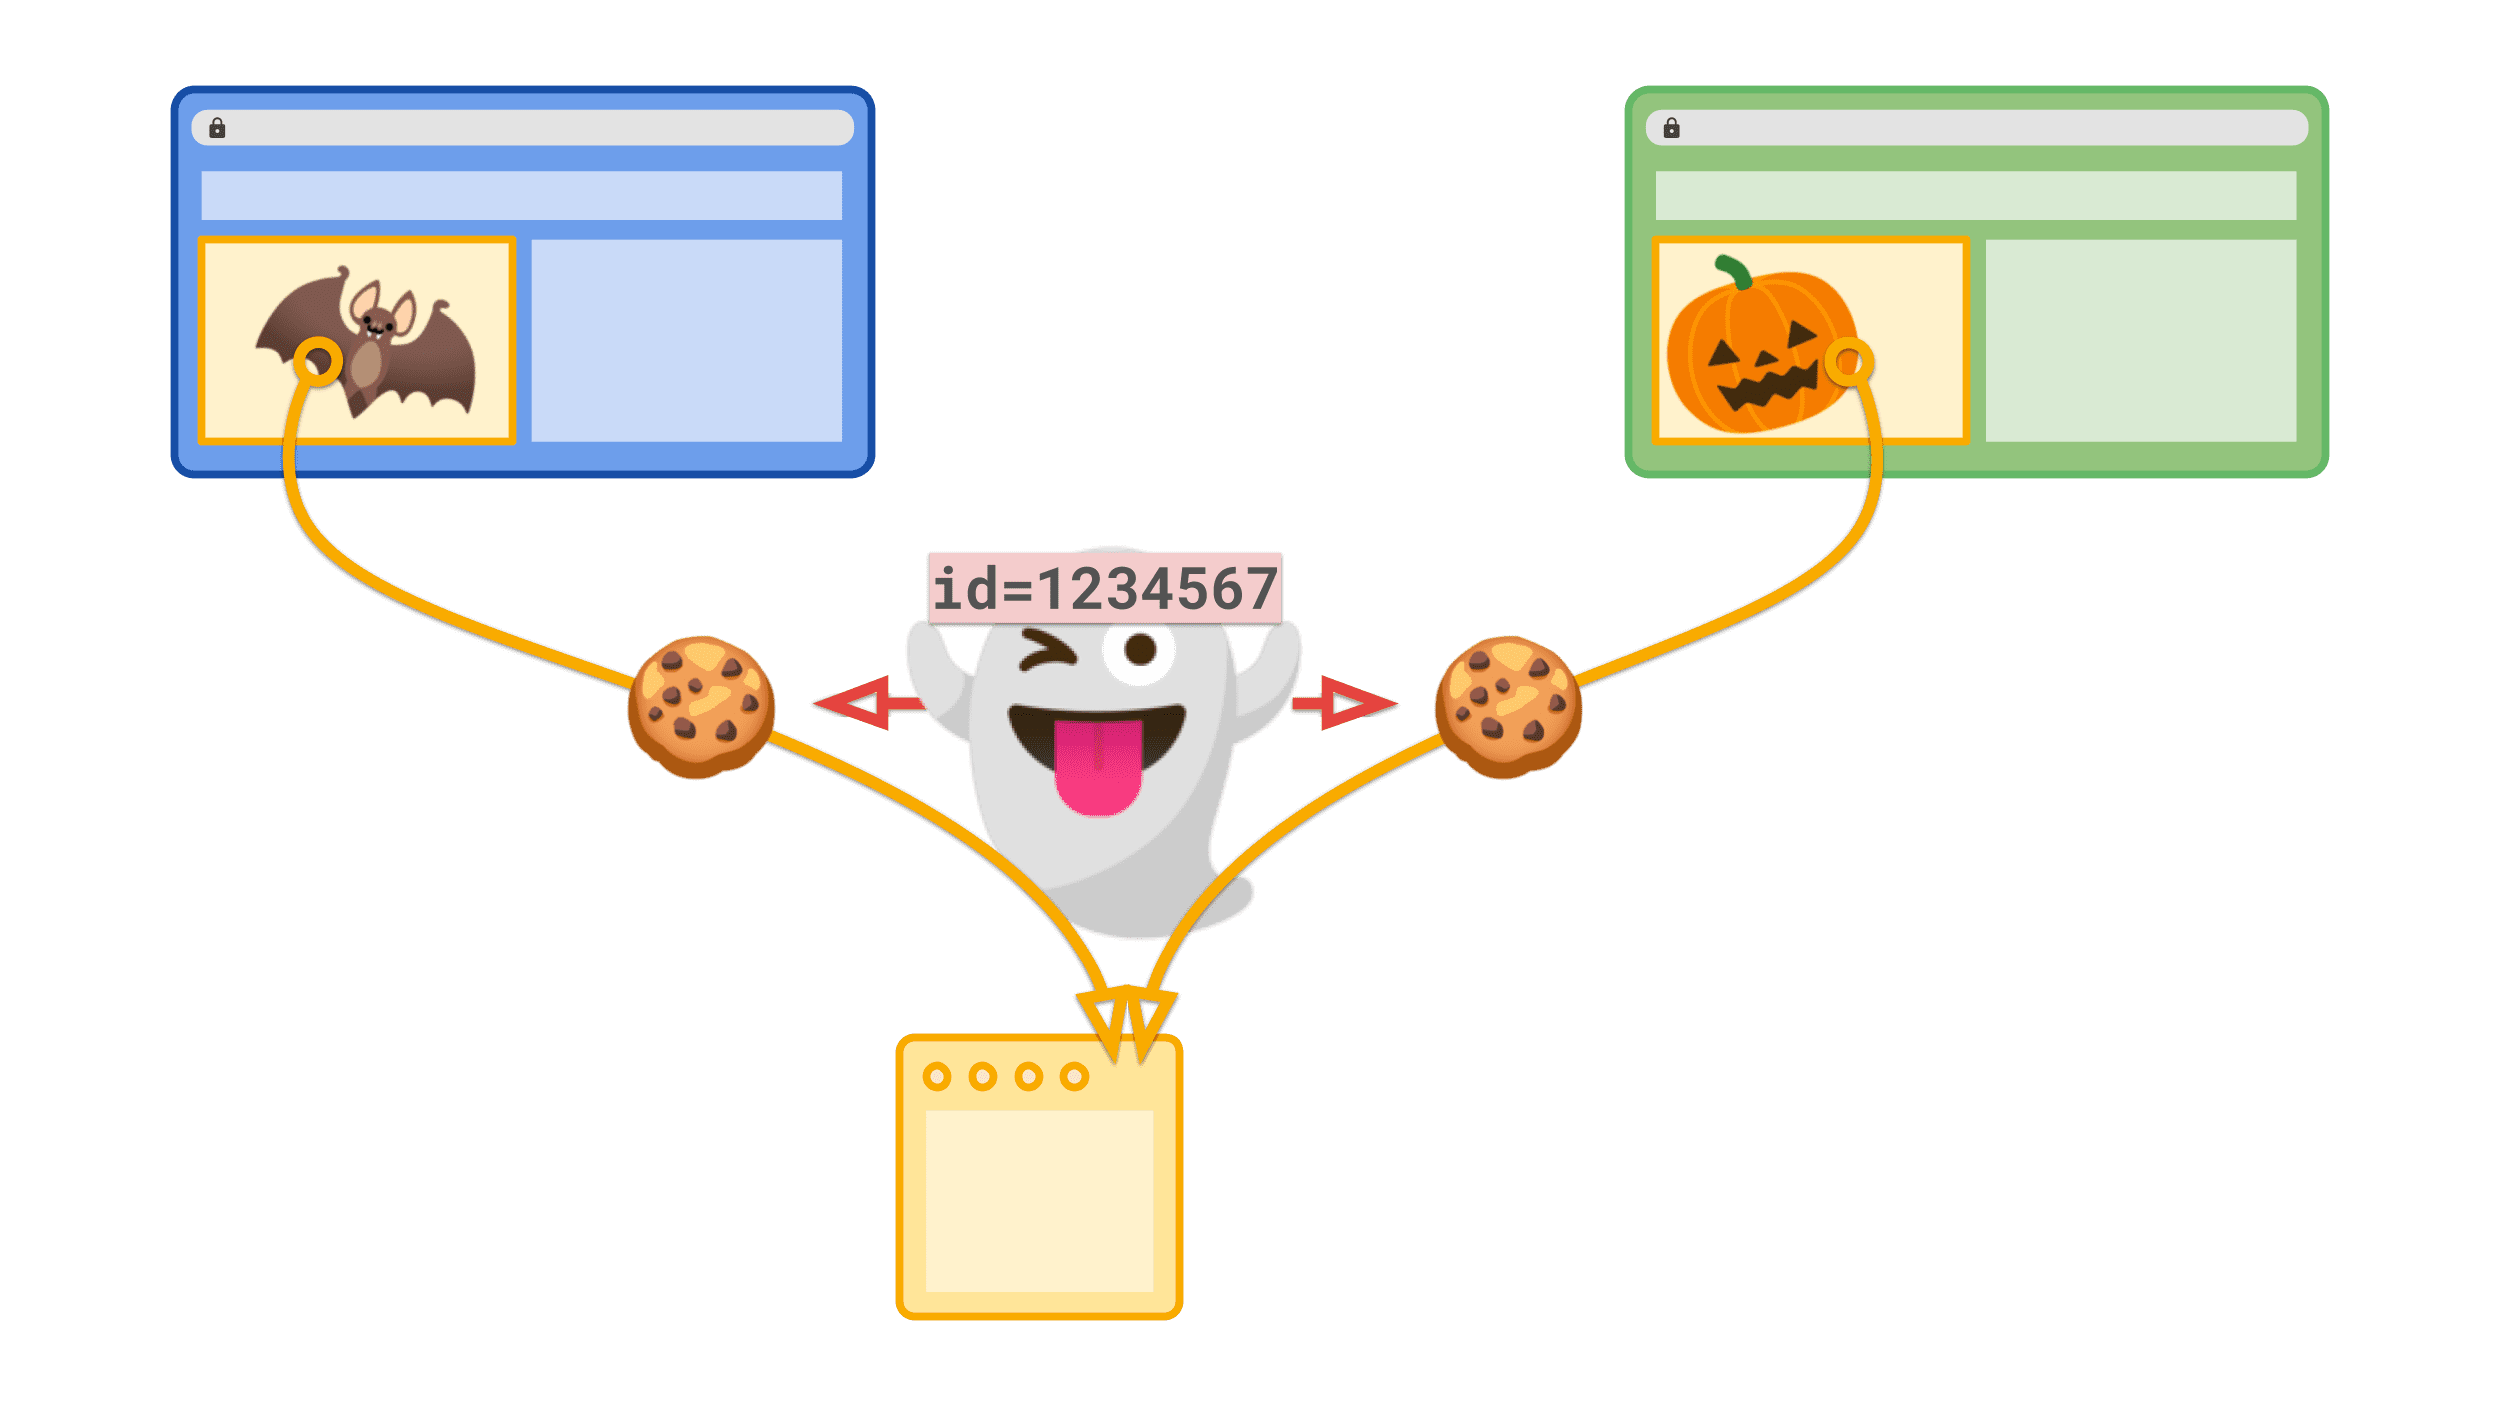 第三方 Cookie 會使用專屬 ID，可讓第三方網站追蹤使用者在網路上的活動